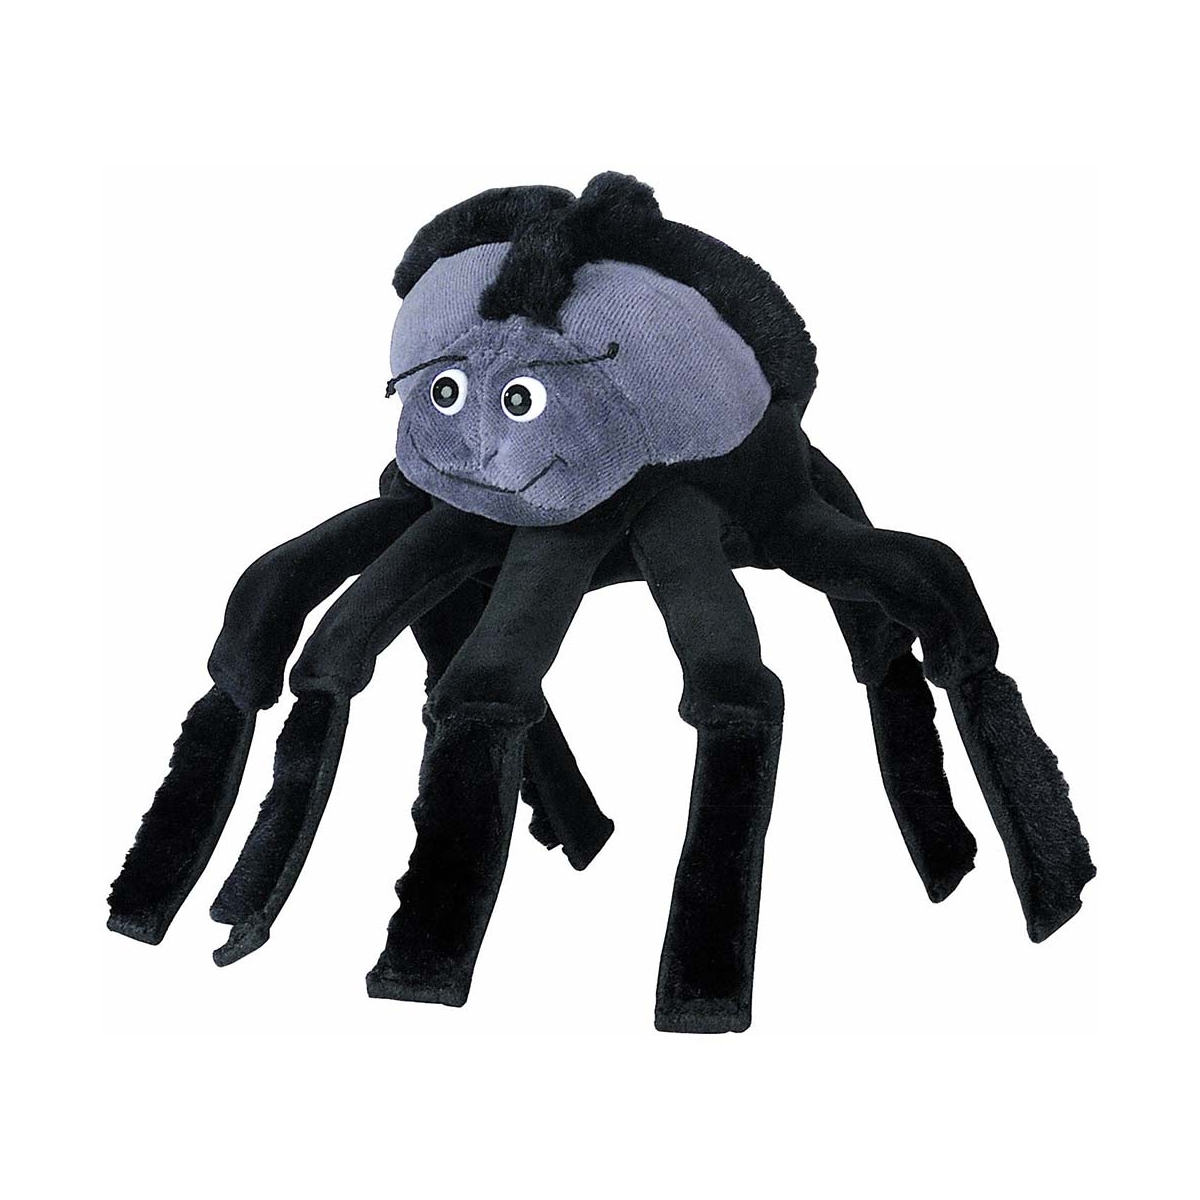 Gant d'enfant Beleduc Spider